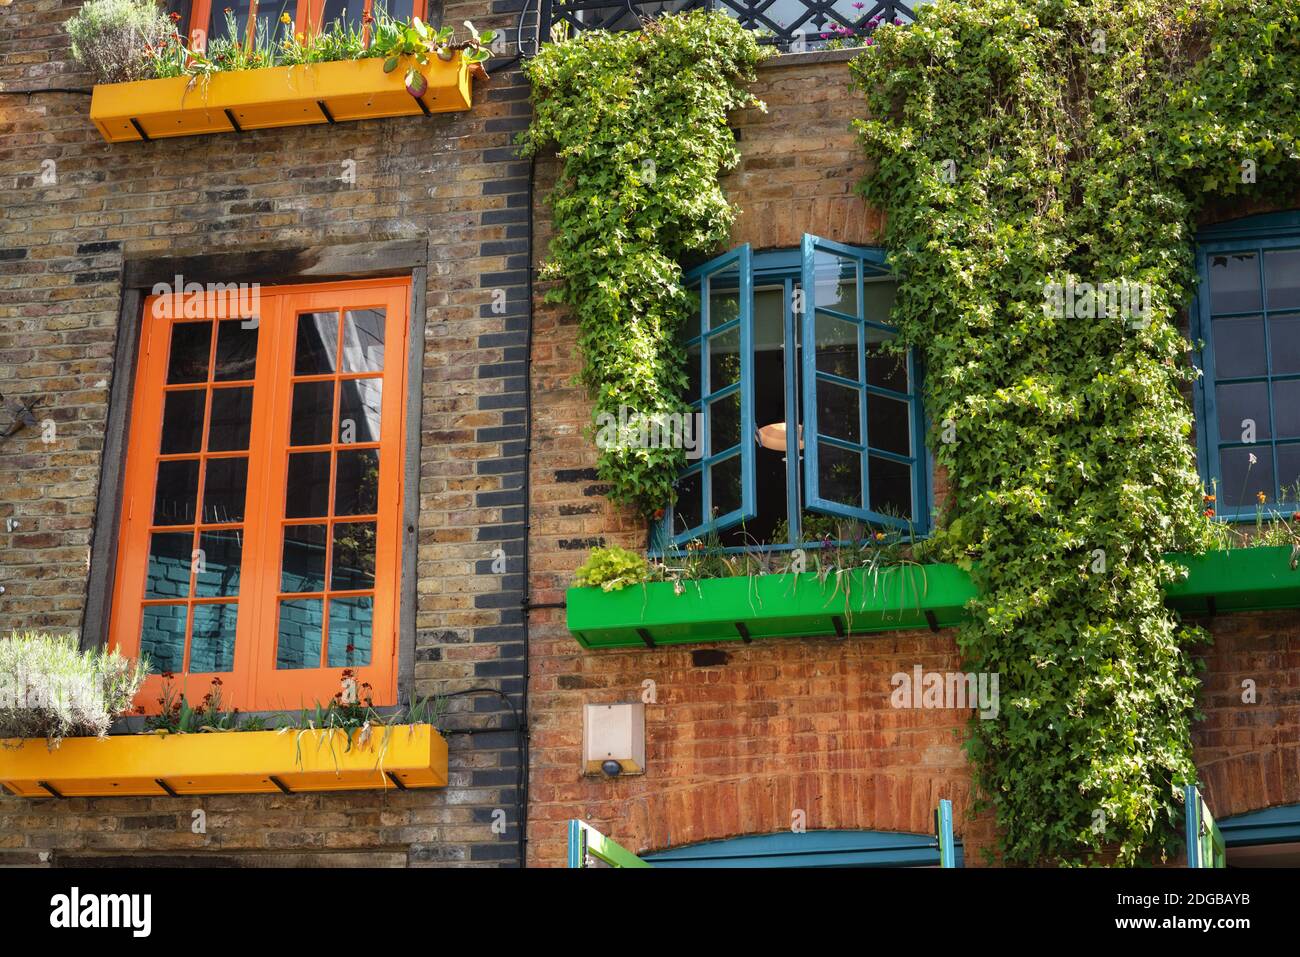 Dettaglio facciata in Covent Garden con case colorate. Contiene diversi caffè di cibo salutare e rivenditori di valore guidato. Foto Stock